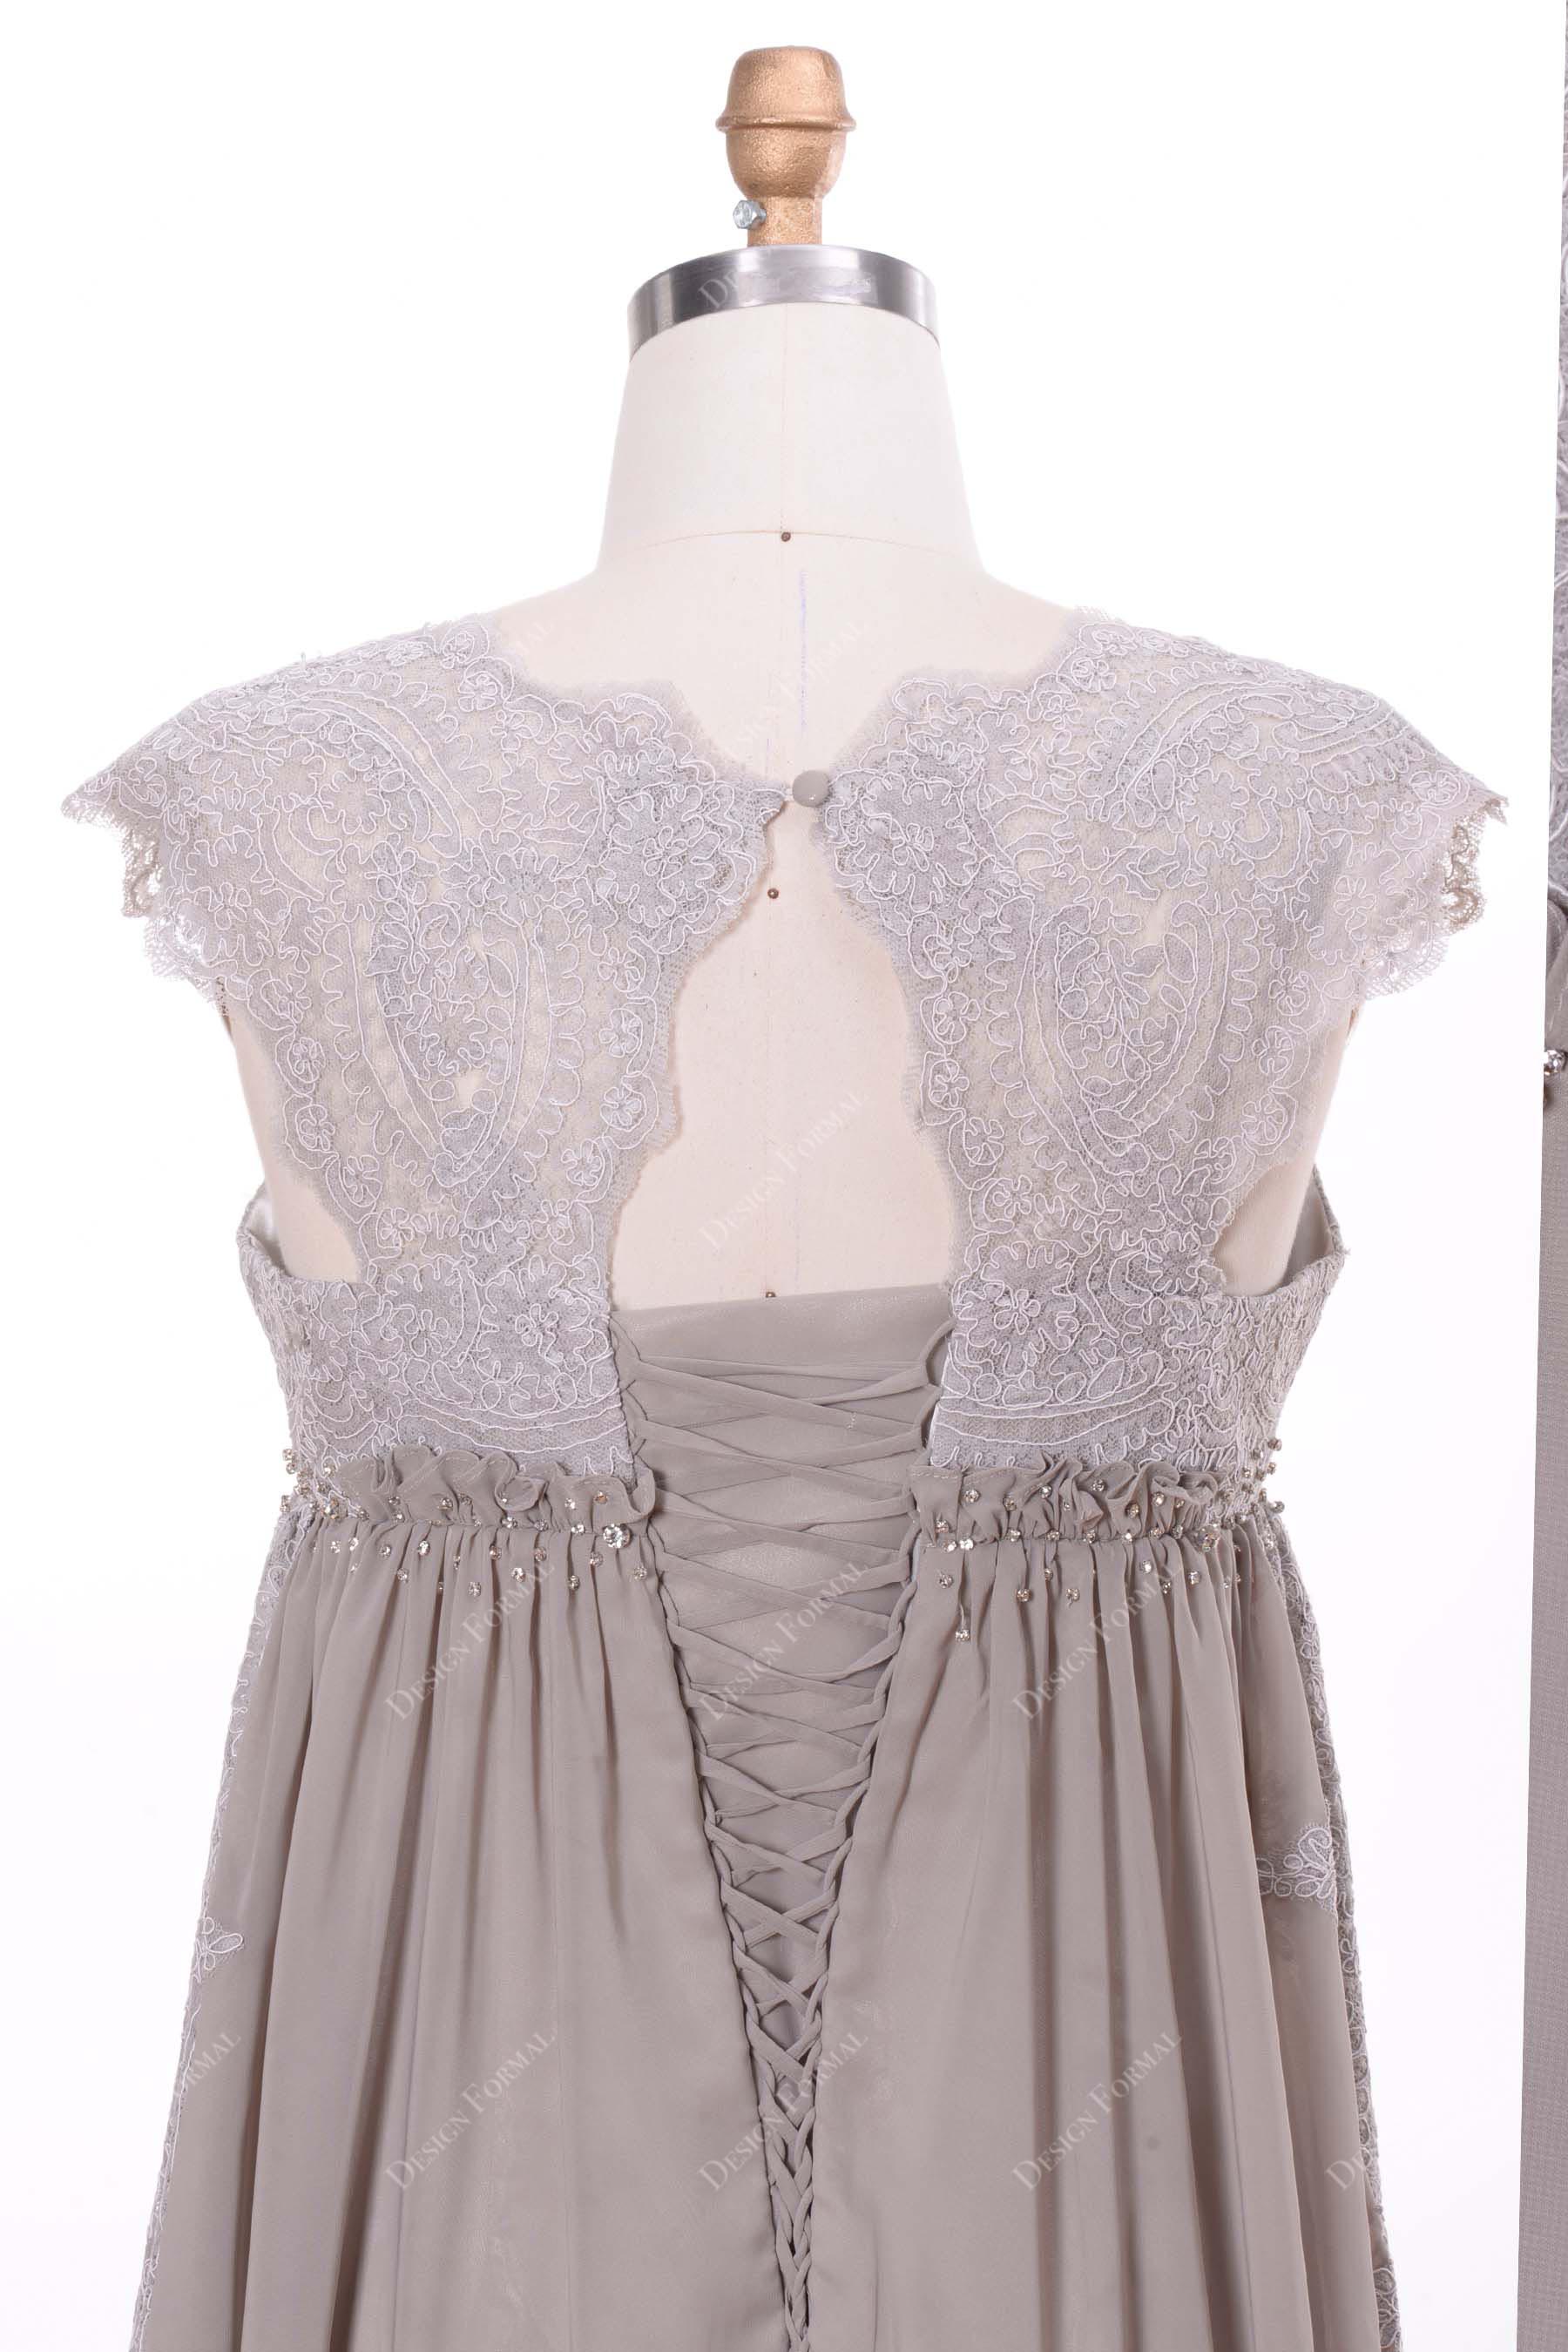 cutout back illusion lace chiffon bridal dress